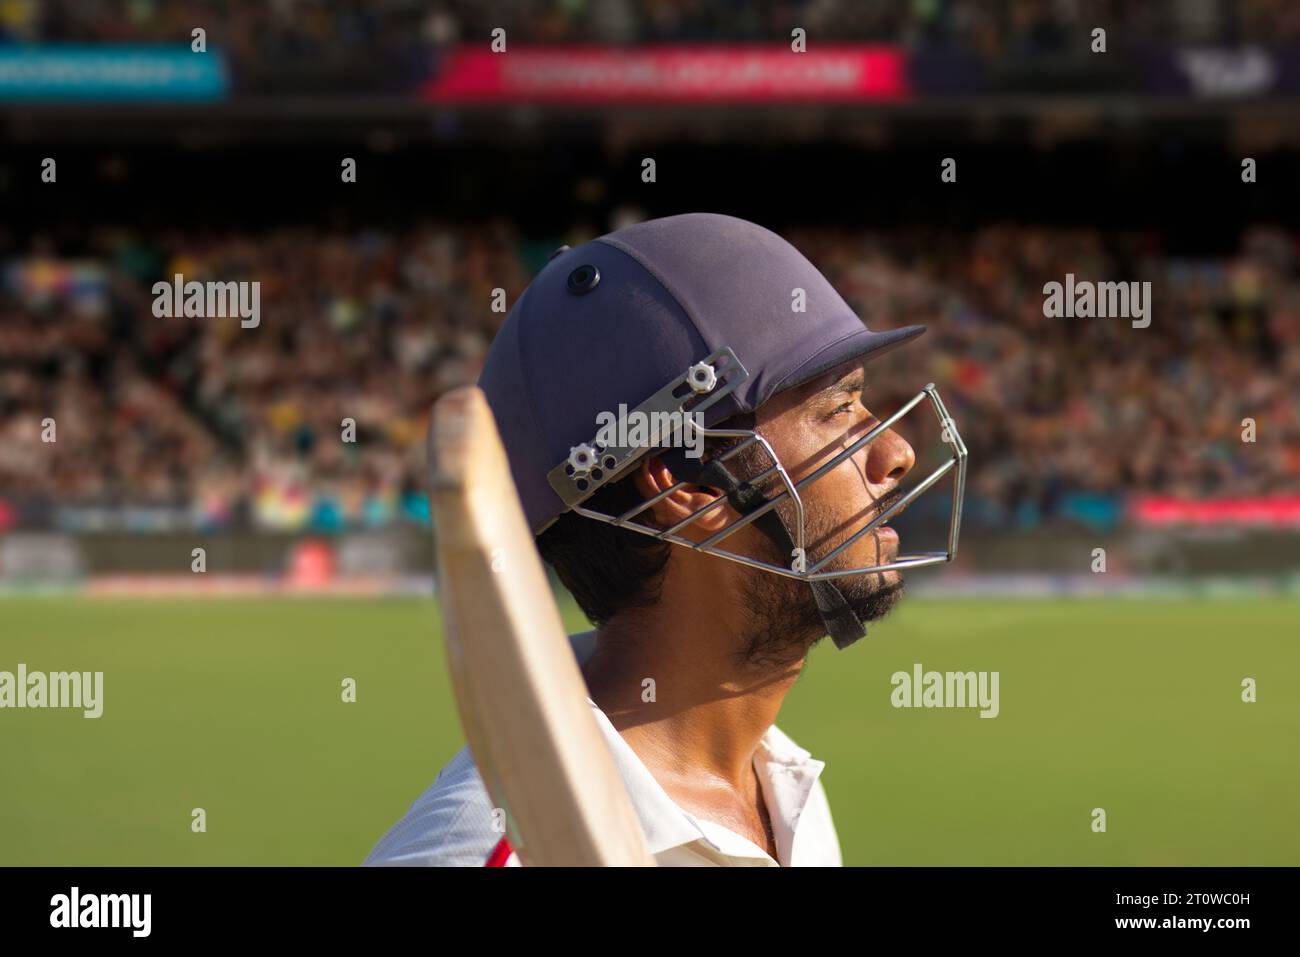 Battitore che guarda in alto mentre aspetta il lanciatore durante una partita di cricket Foto Stock